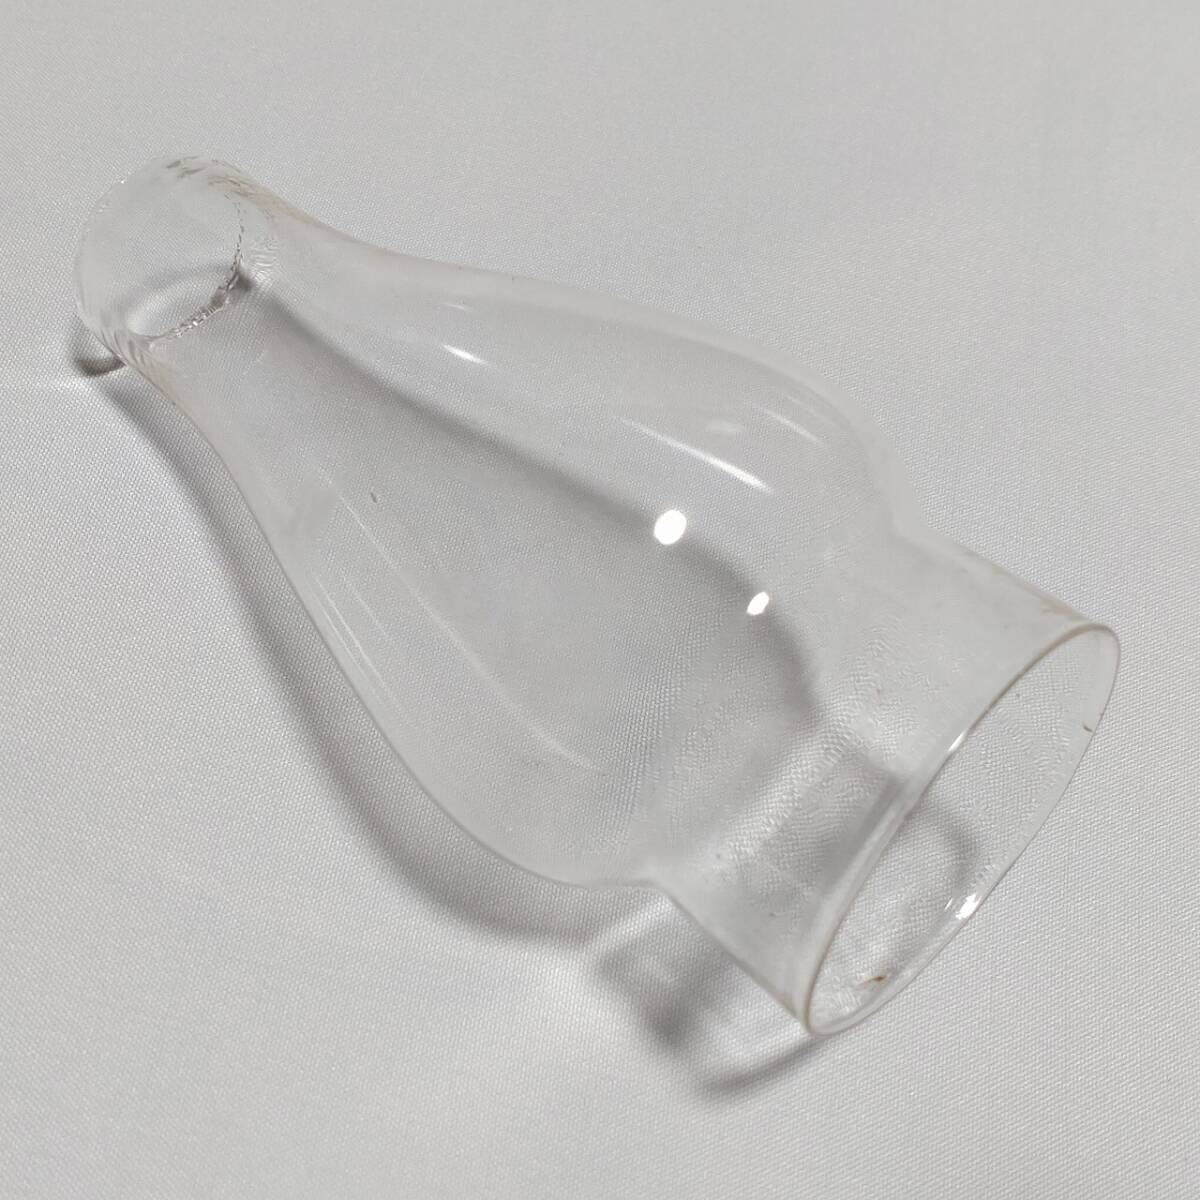 オイルランプのホヤ ガラス製 古硝子 気泡硝子 古道具 レトロ 直径約70㎜ 高さ約148㎜ 口径（内径）上部約28㎜ 下部約54㎜ 【3460】_画像3